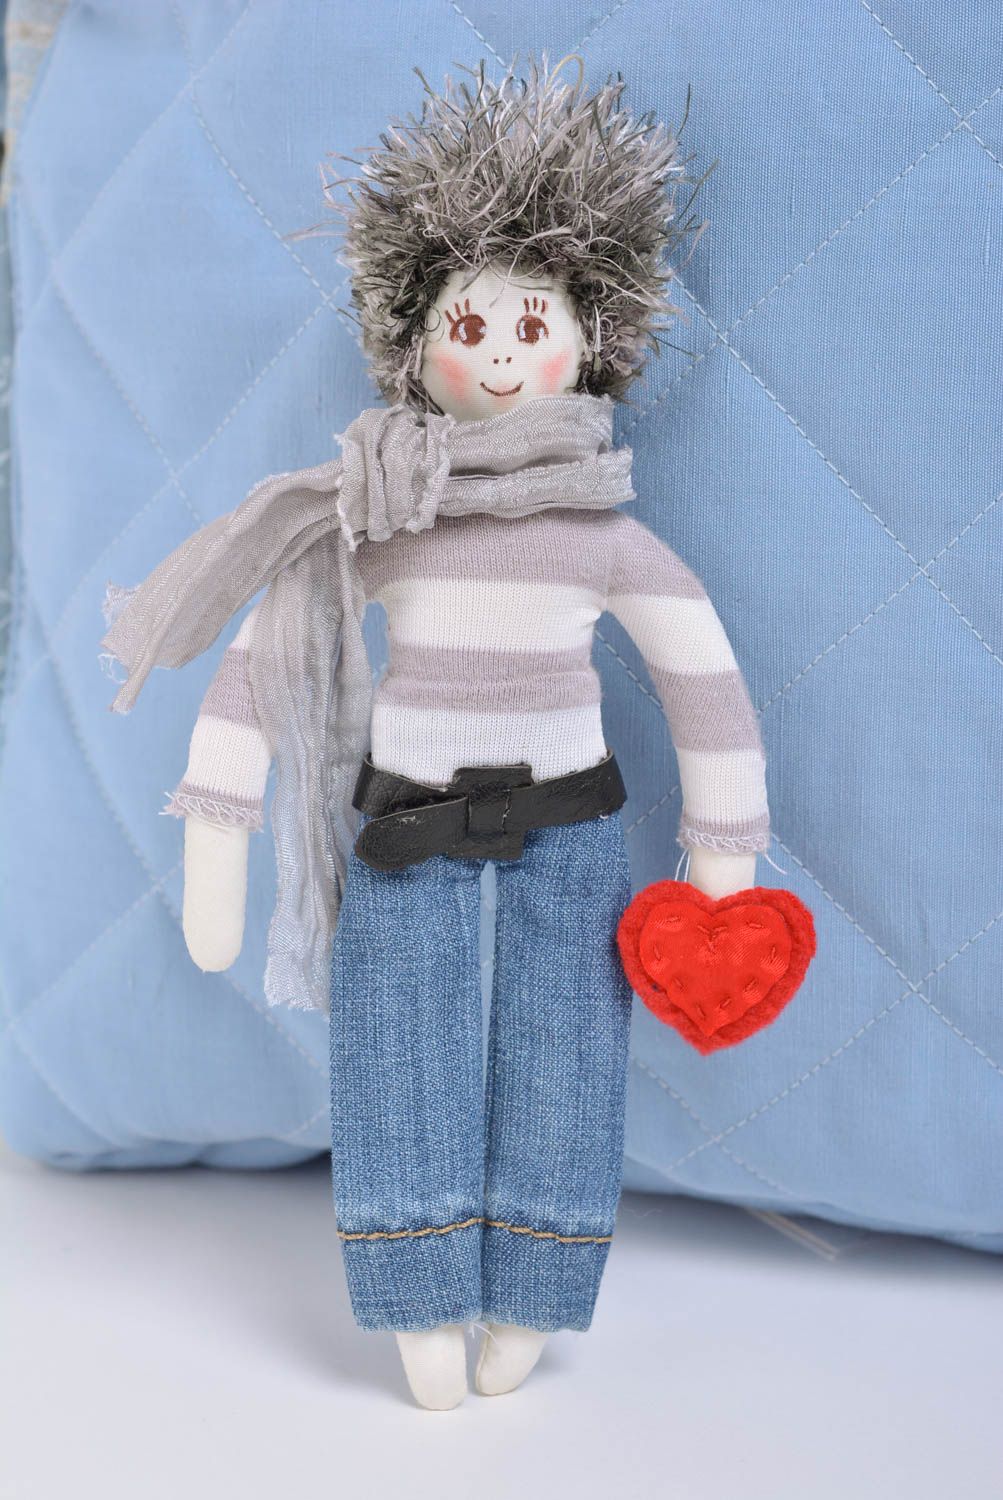 Авторская кукла мальчик с сердцем небольшая красивая в серых тонах ручная работа фото 1